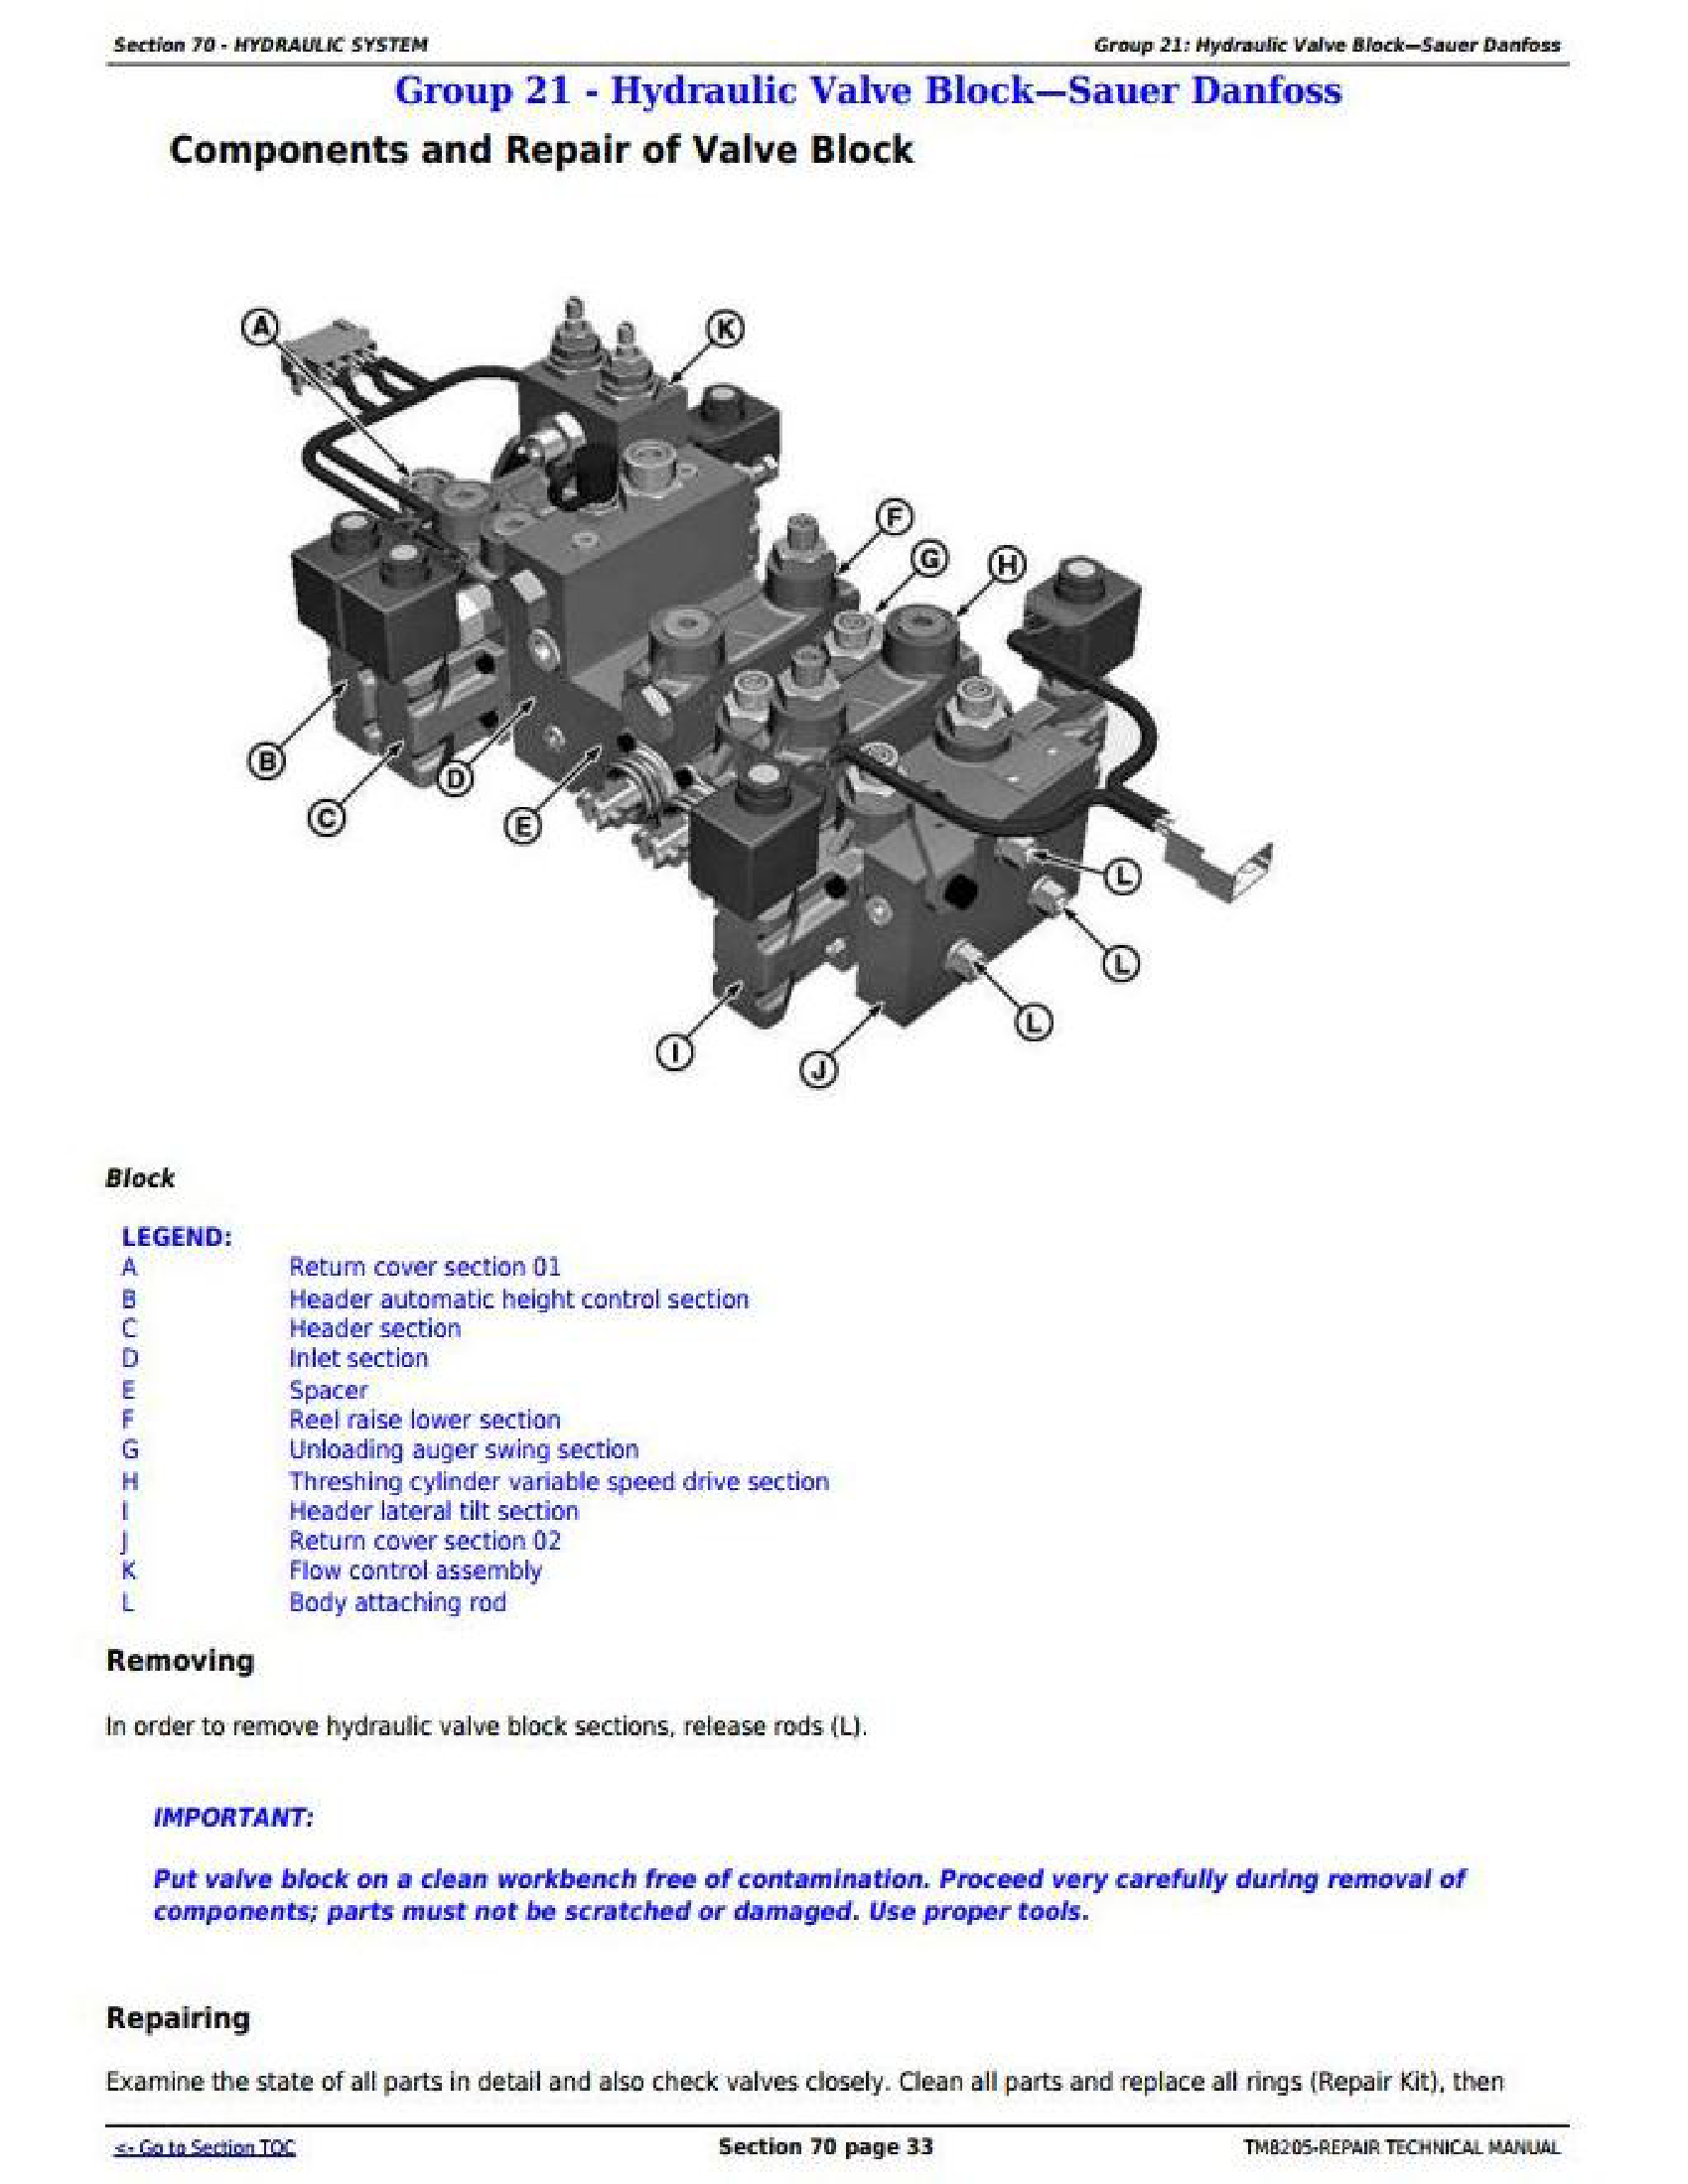 John Deere 1YNWL53 manual pdf